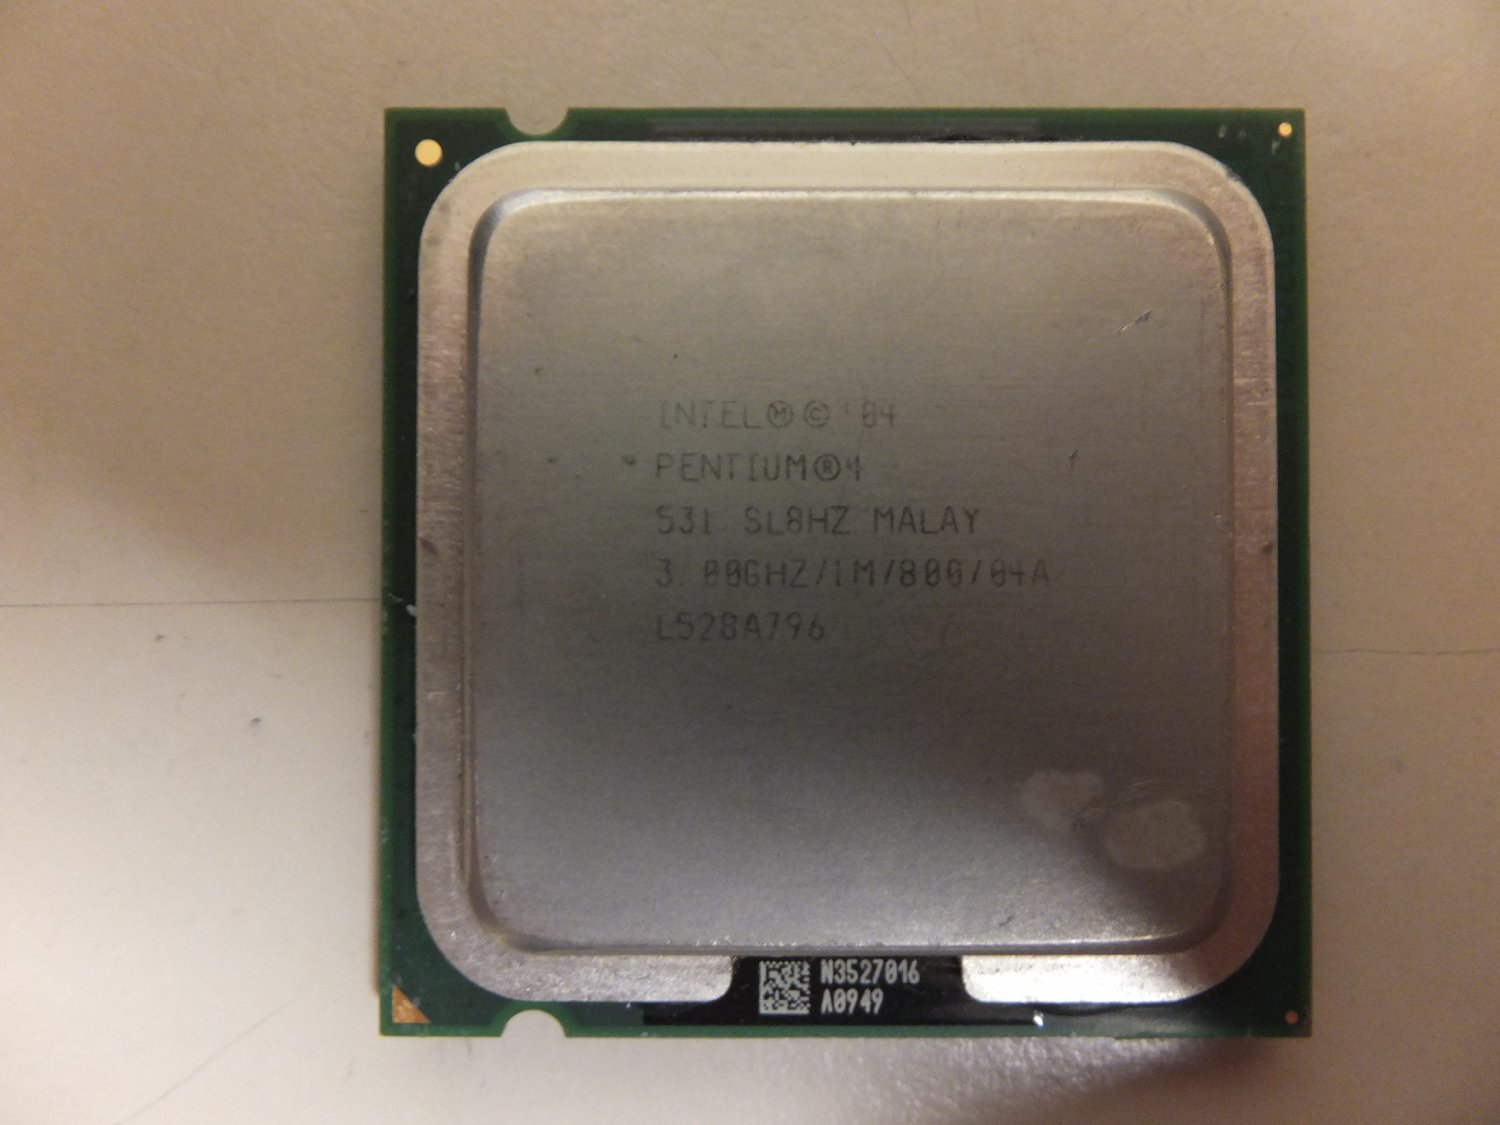 4 3.3 ггц. Intel Pentium 4 CPU 3.00GHZ 3.00GHZ. Intel 04 Pentium 4 3.00GHZ/1m/800/04a. Intel Pentium 4 3.00. Процессор Intel Pentium 4 531 lga775.